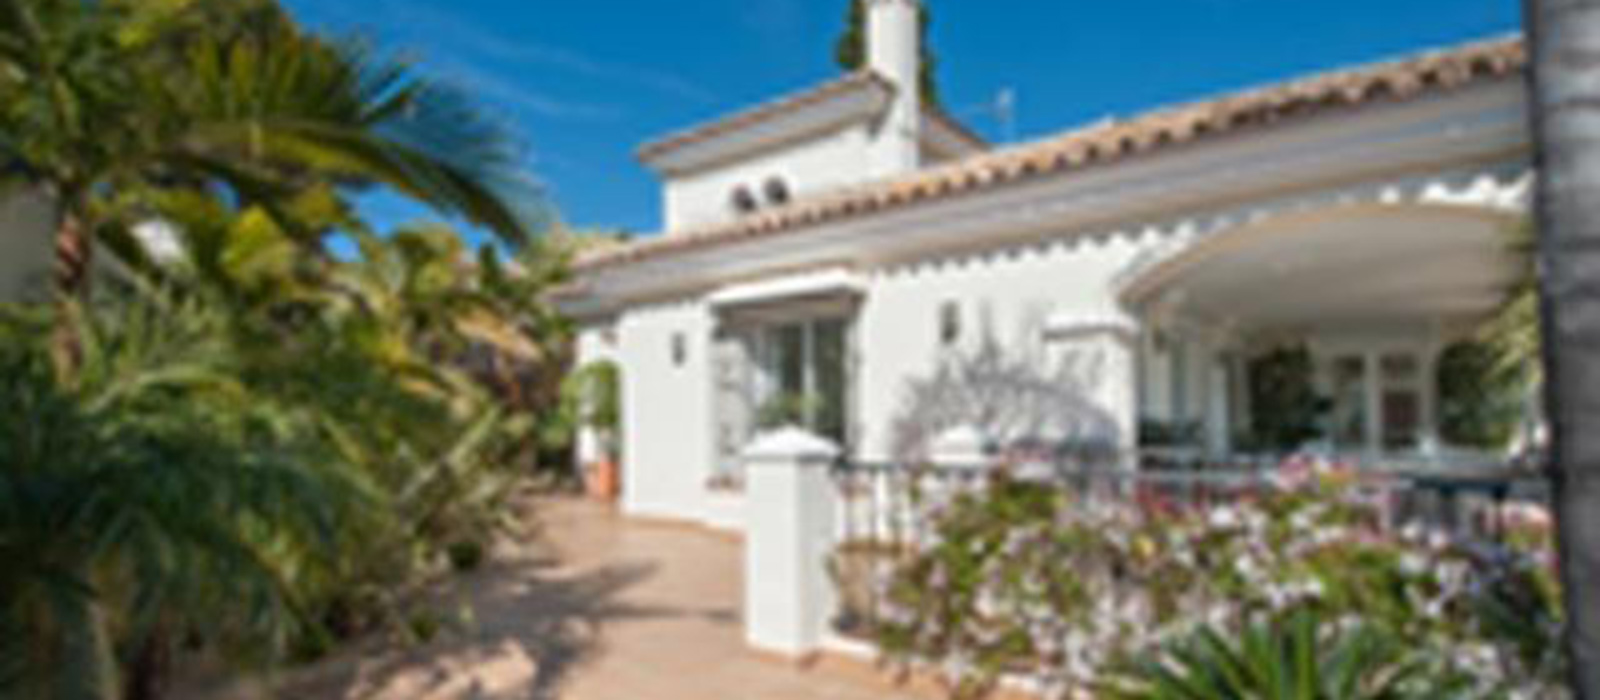 El Rosario, Marbella, Andalusia, Spain, 4 Bedrooms Bedrooms, ,5 BathroomsBathrooms,Houses - Villa,For sale,1034